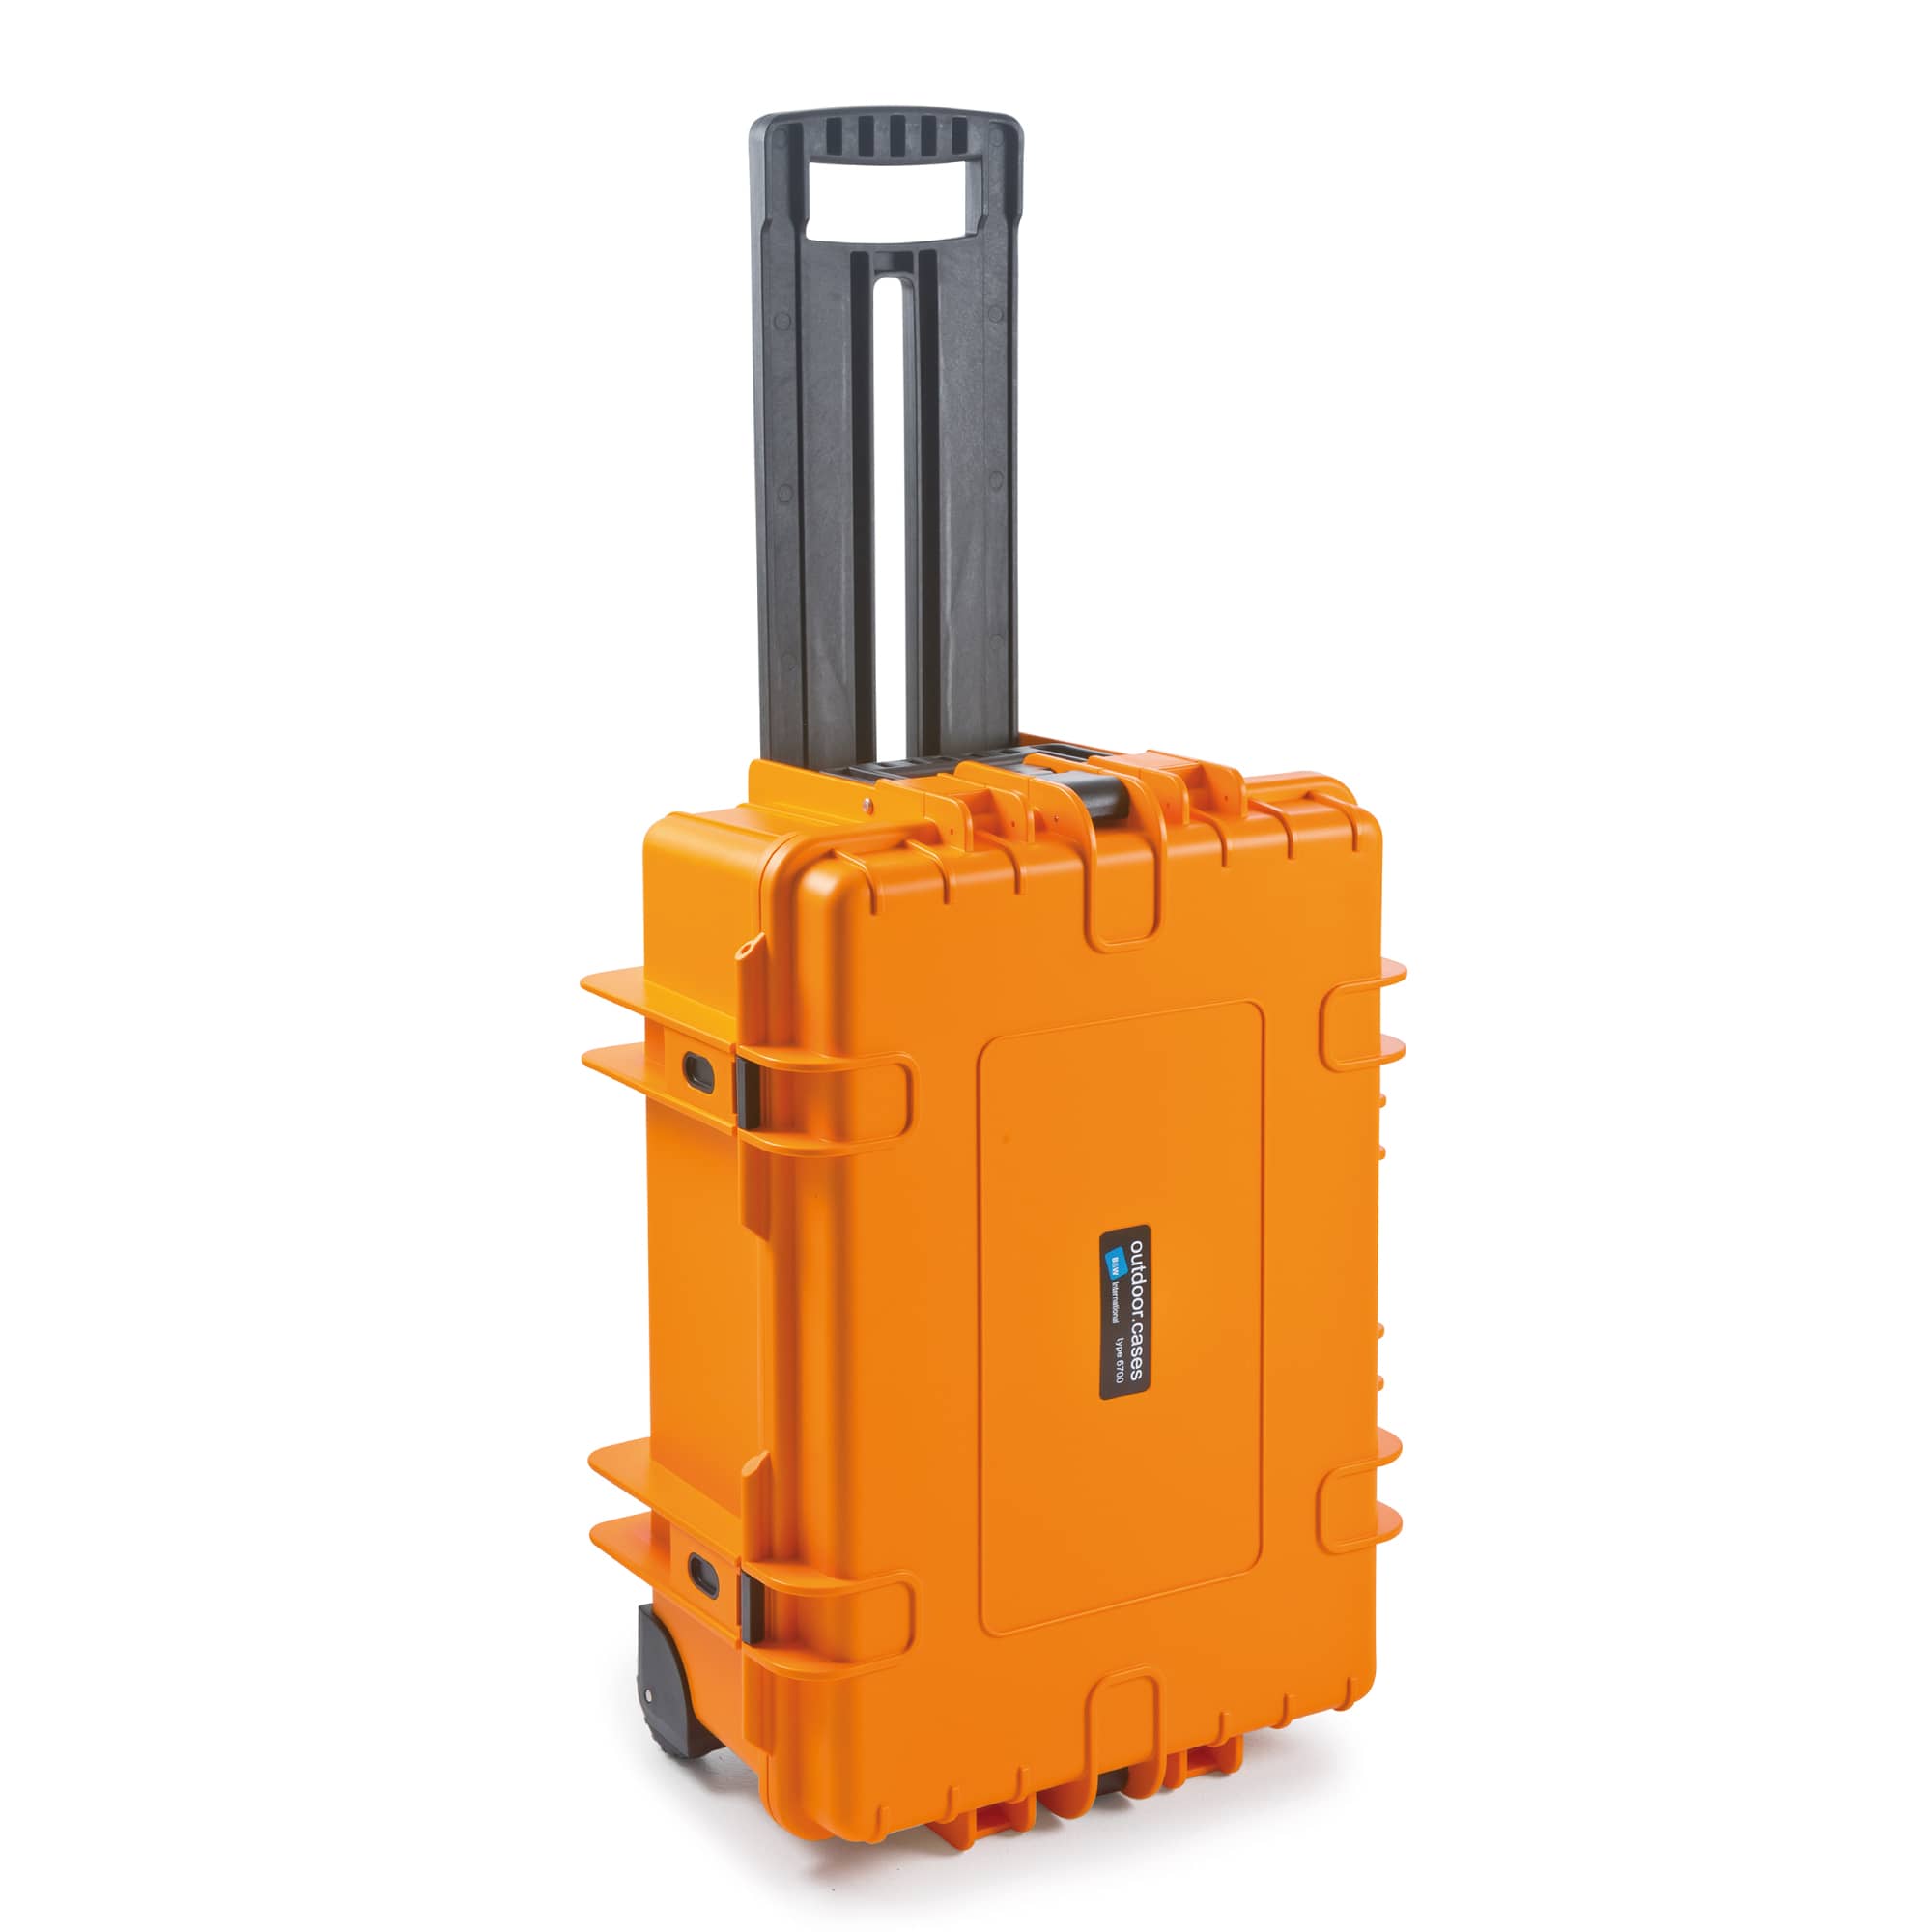 B&W Outdoor Case Typ 6700 orange mit Würfelschaum (SI)